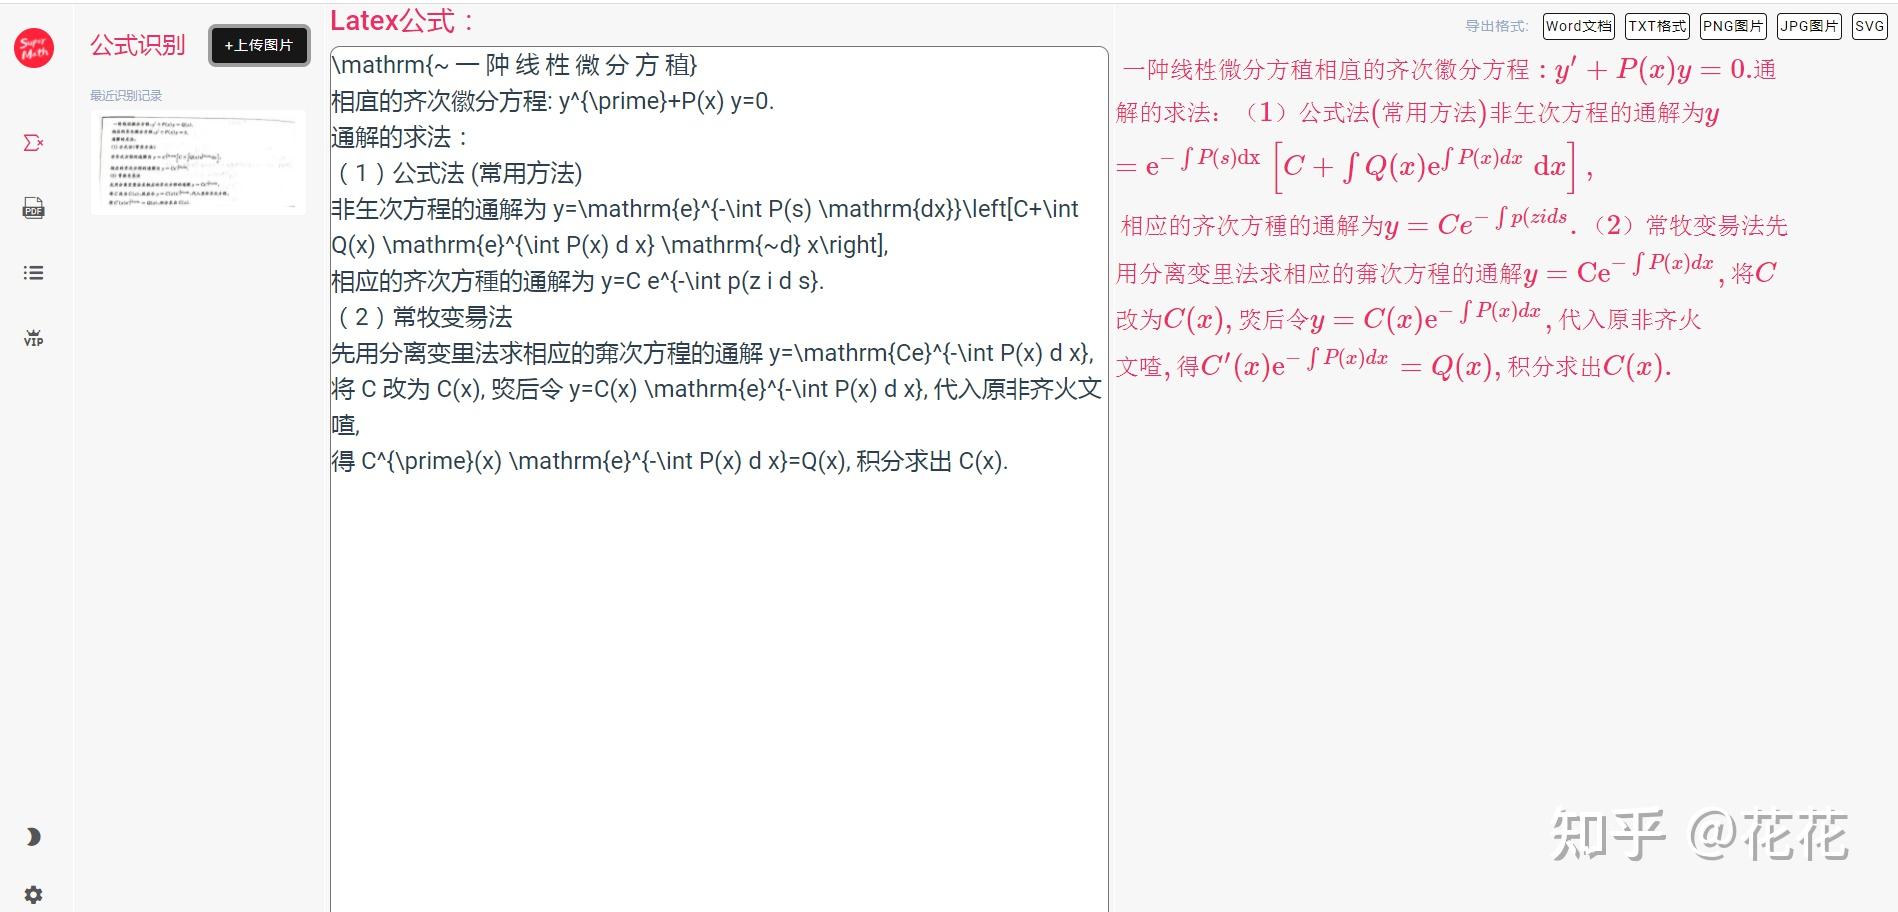 如何将图片中的公式转化到MathType-MathType中文网